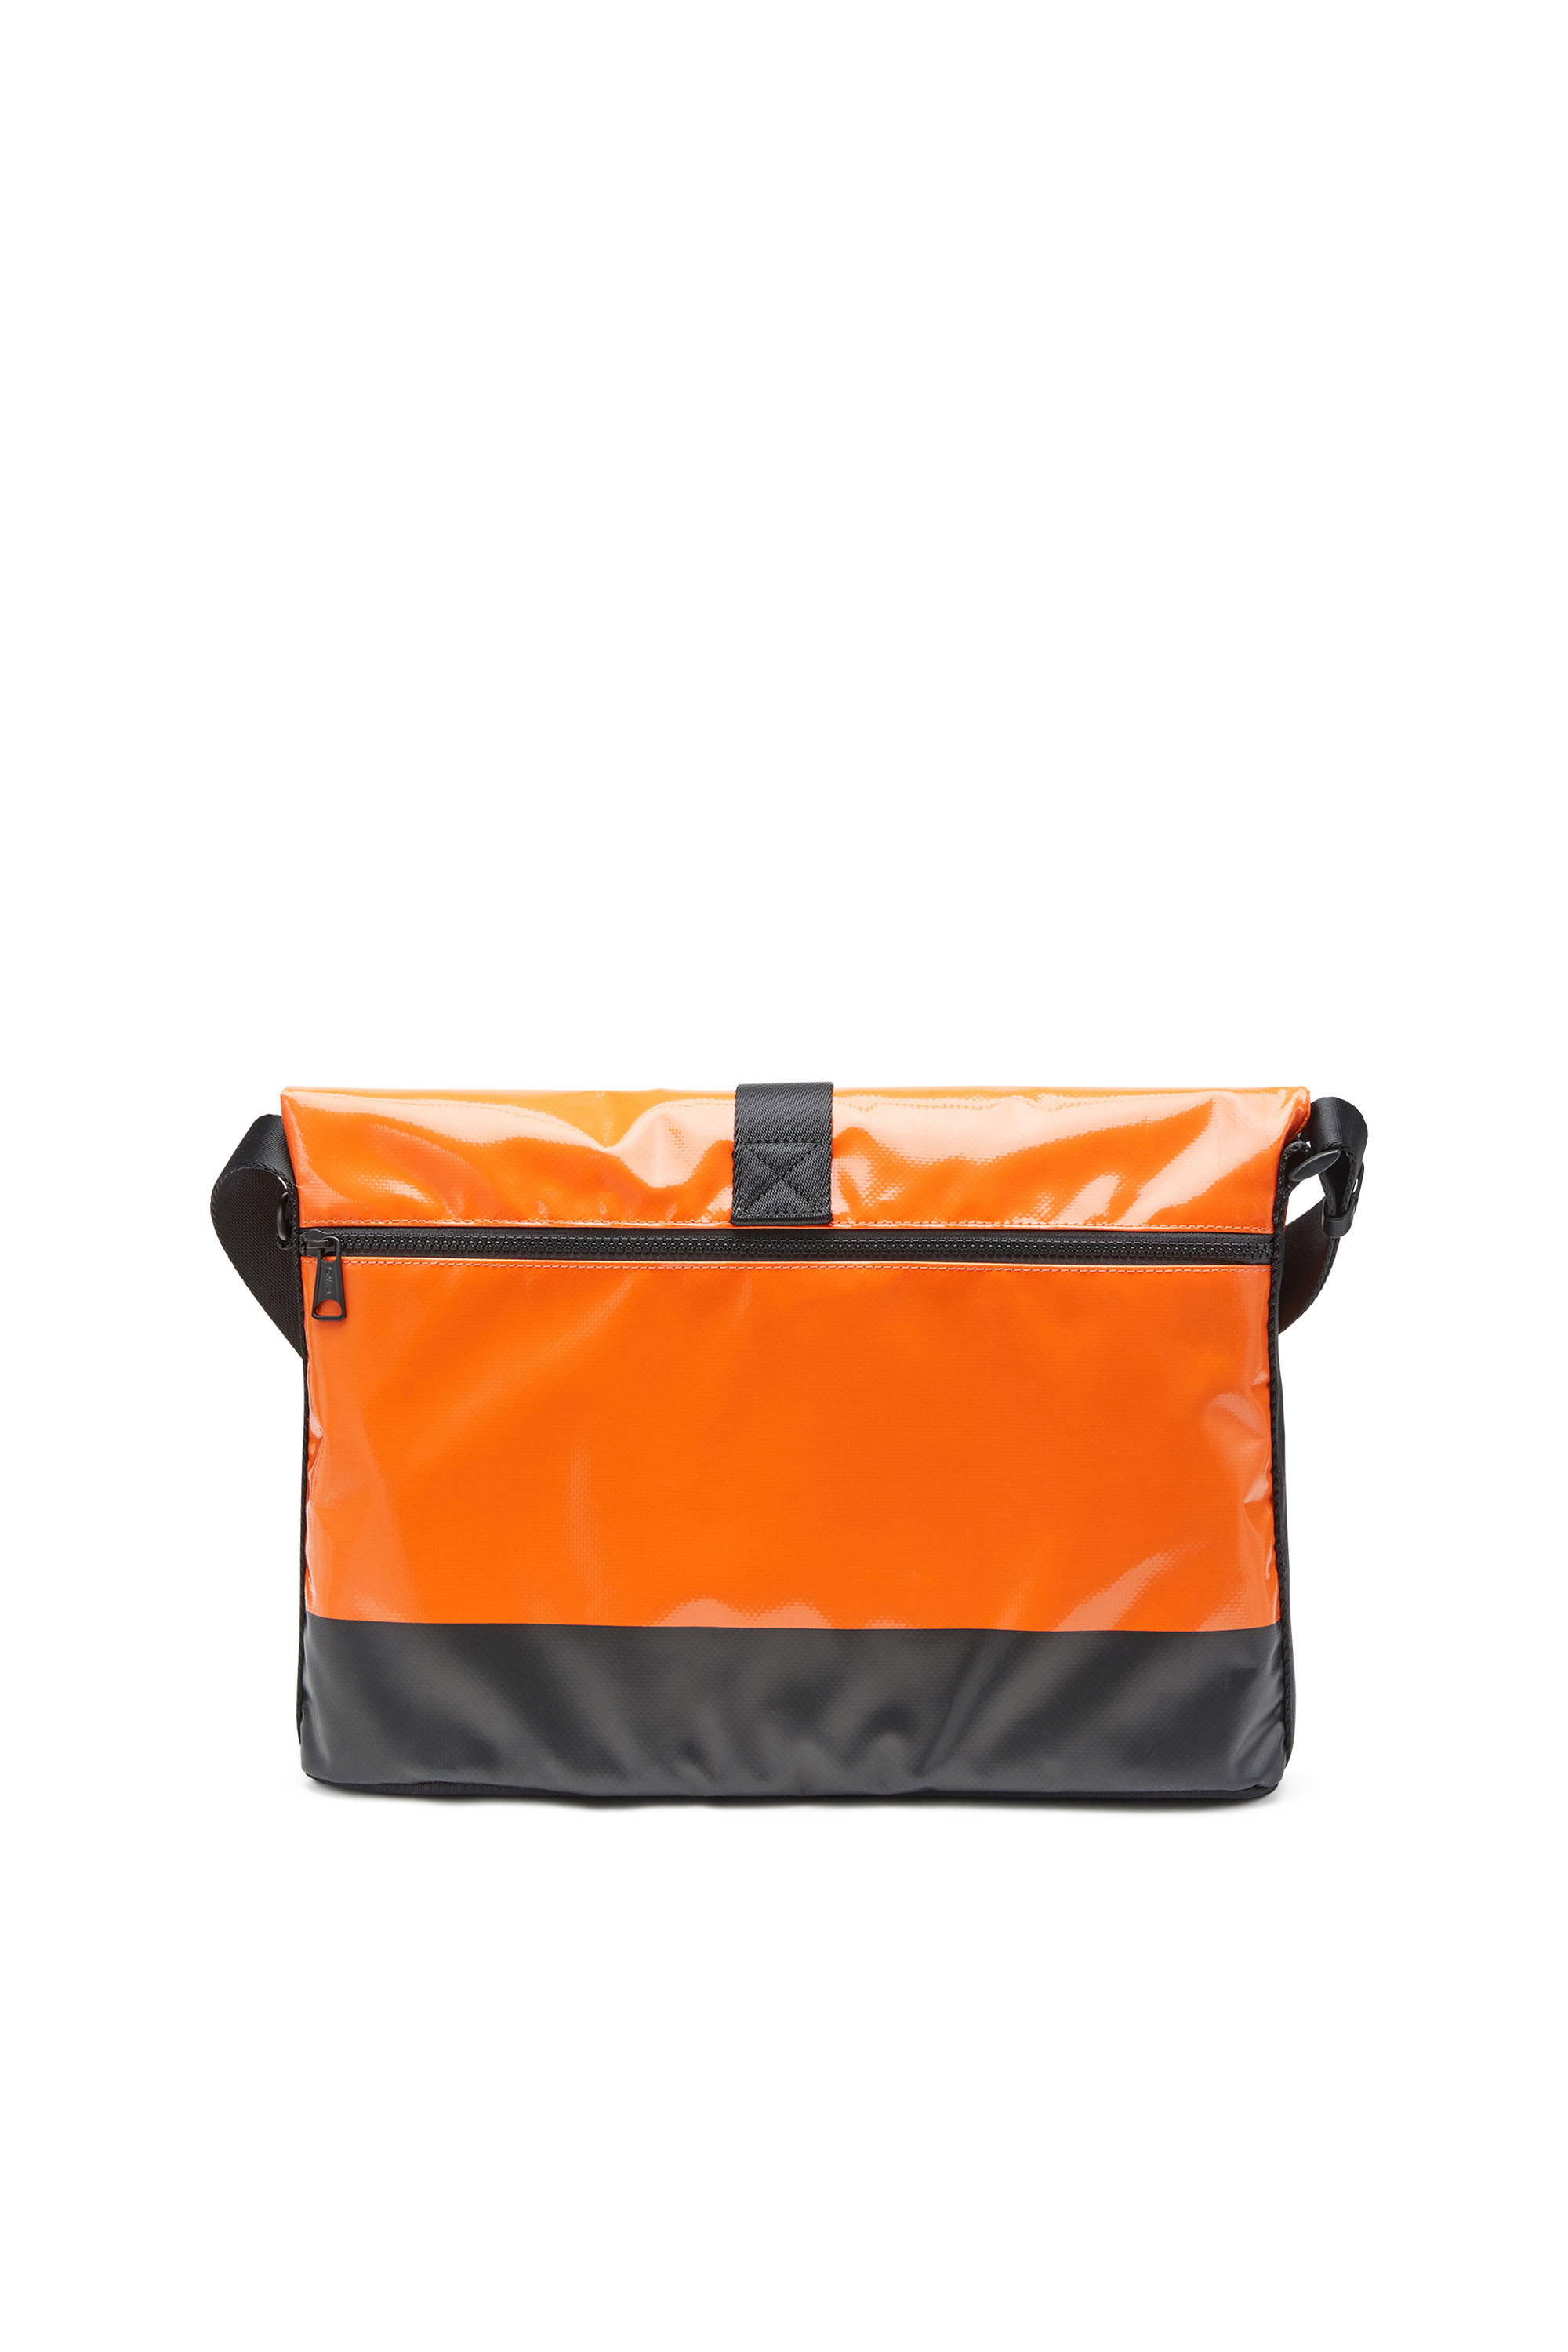 Diesel - TRAP/D SHOULDER BAG M, Orange - Image 2